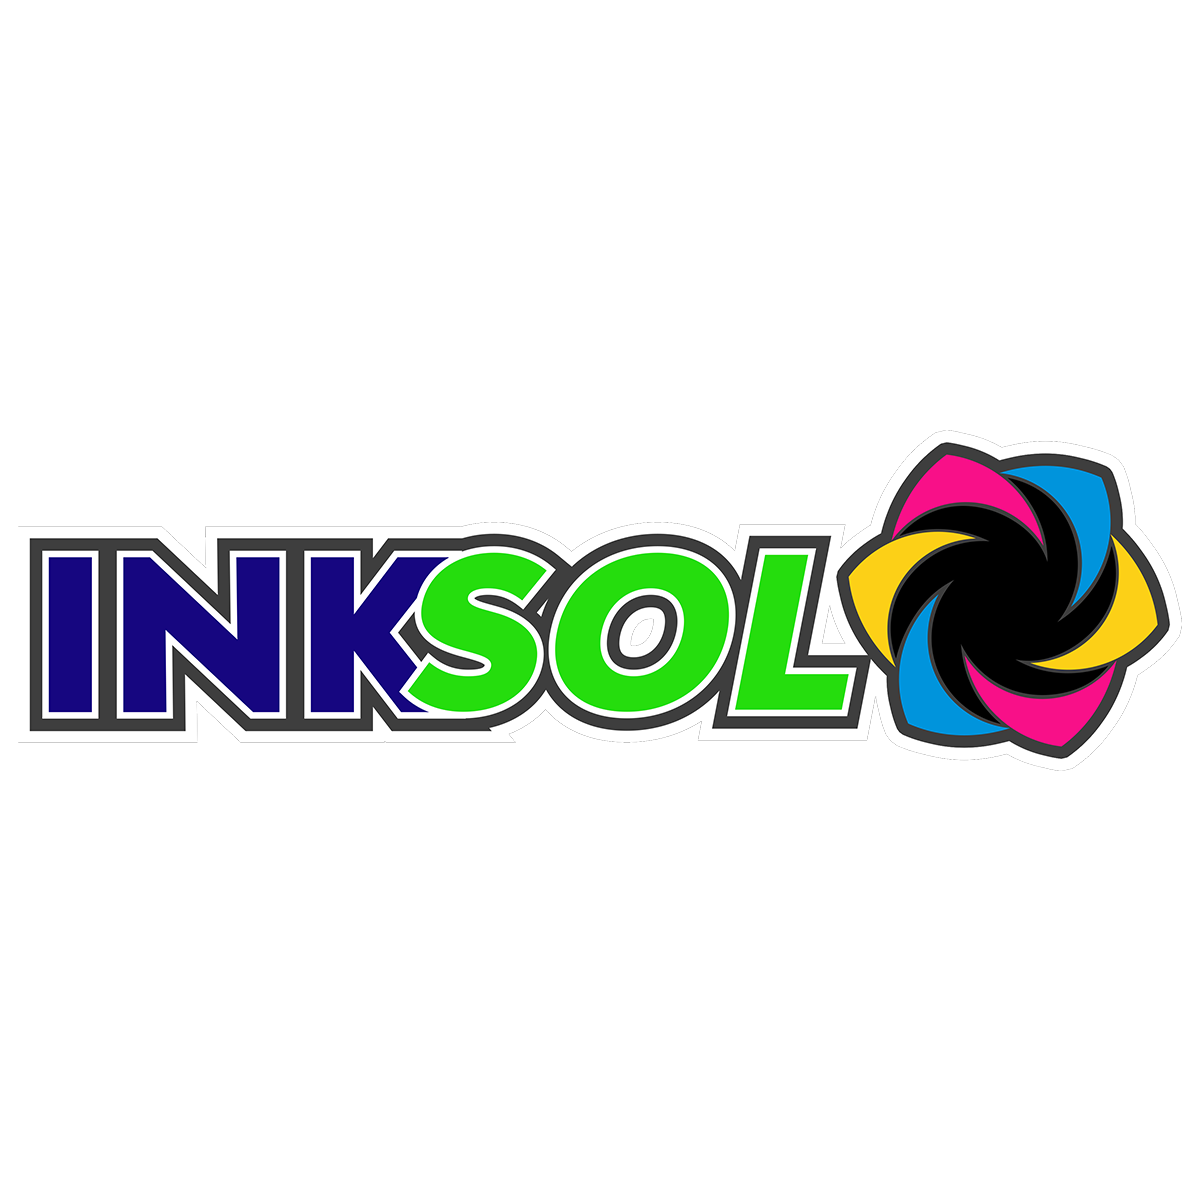 InkSol™